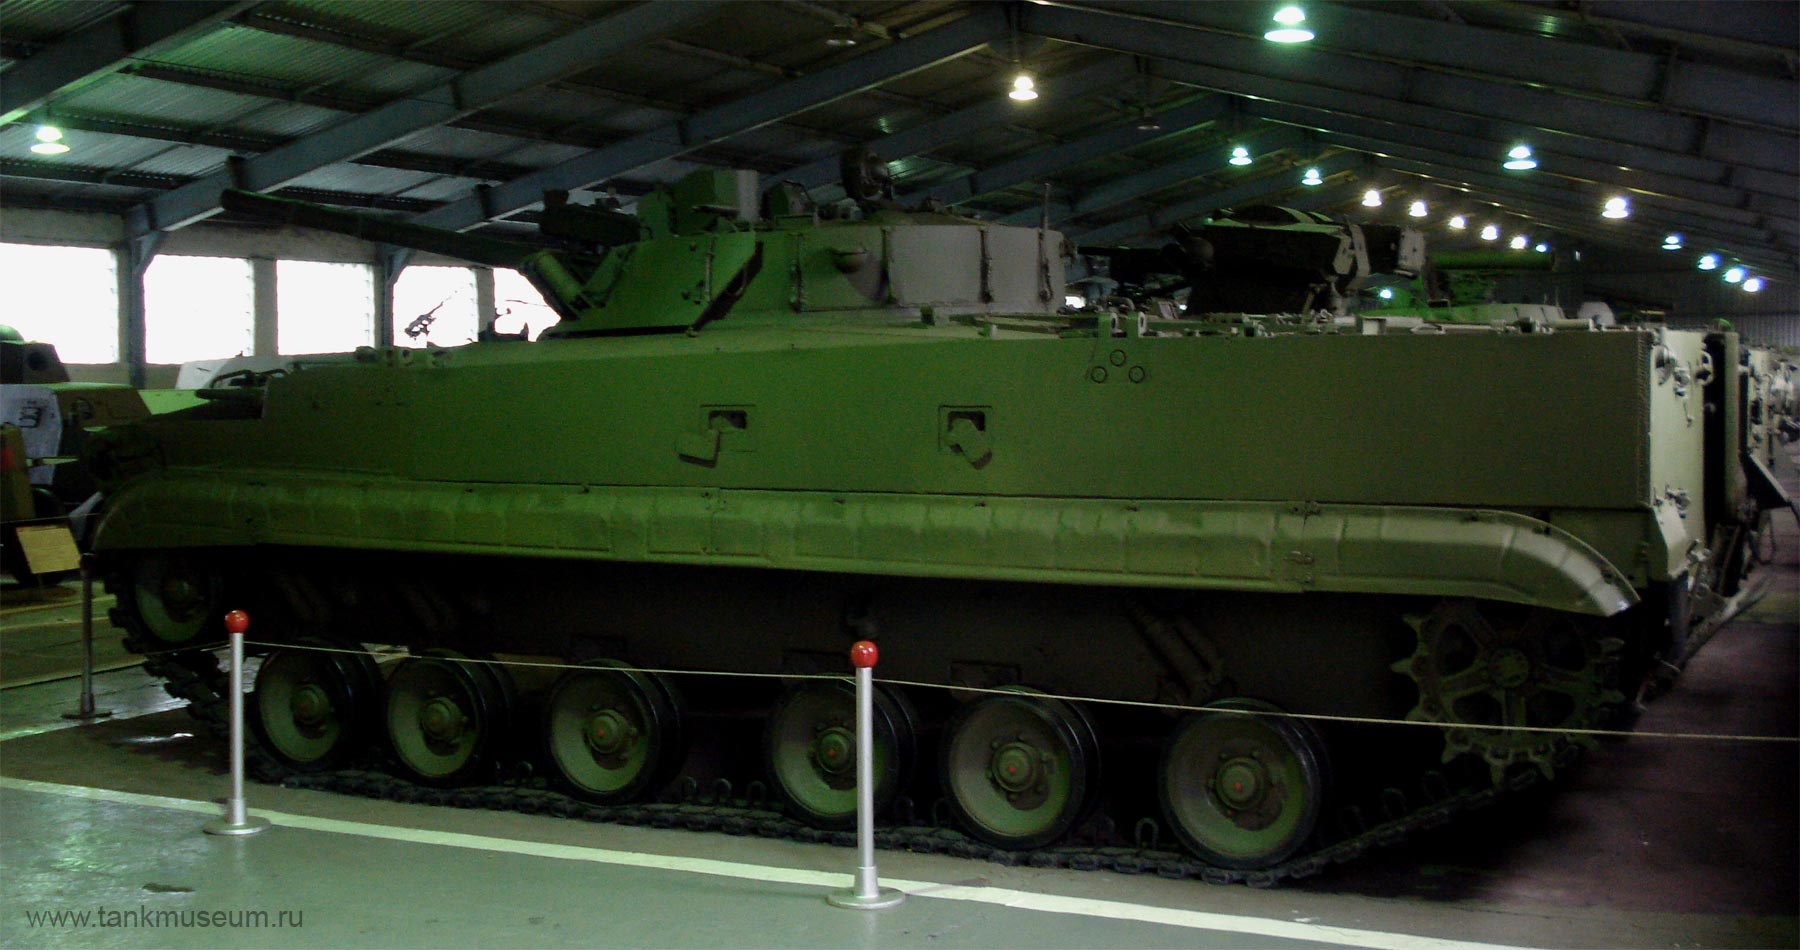 Kubinka tank museum BMP-3 infantry fighting vehicle, photo